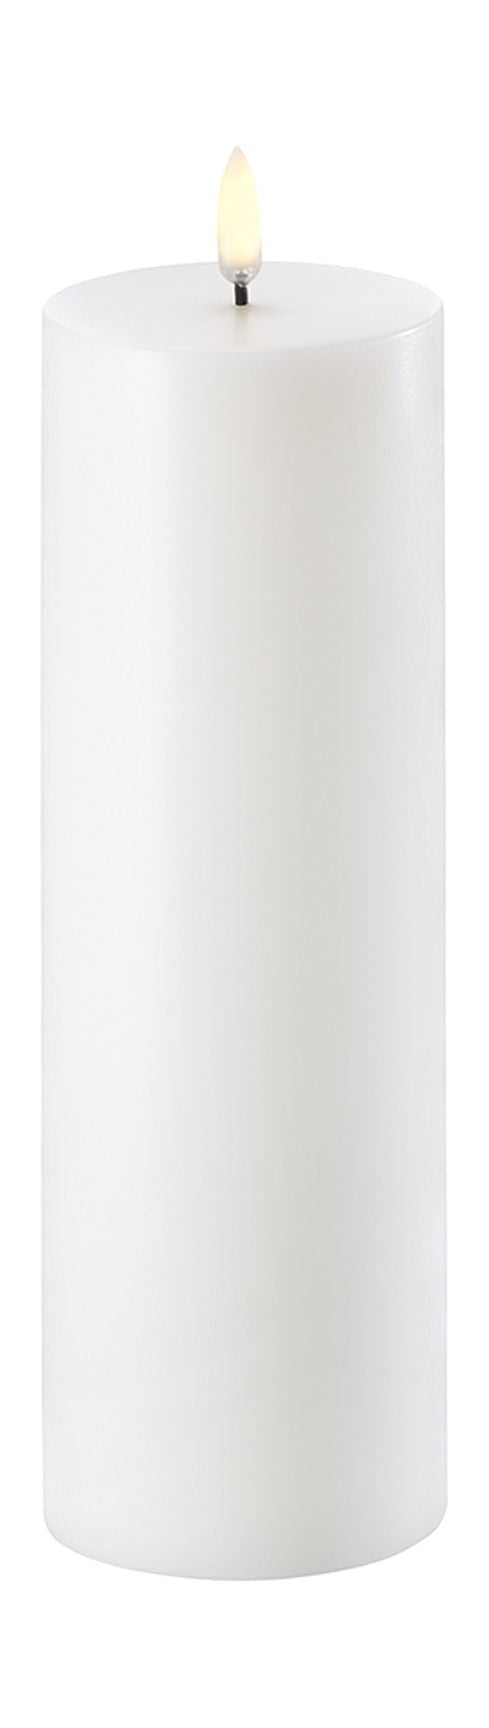 Uyuni Lighting LED Pilier Candle 3 D Flame Øx H 7,3x22 cm, blanc nordique